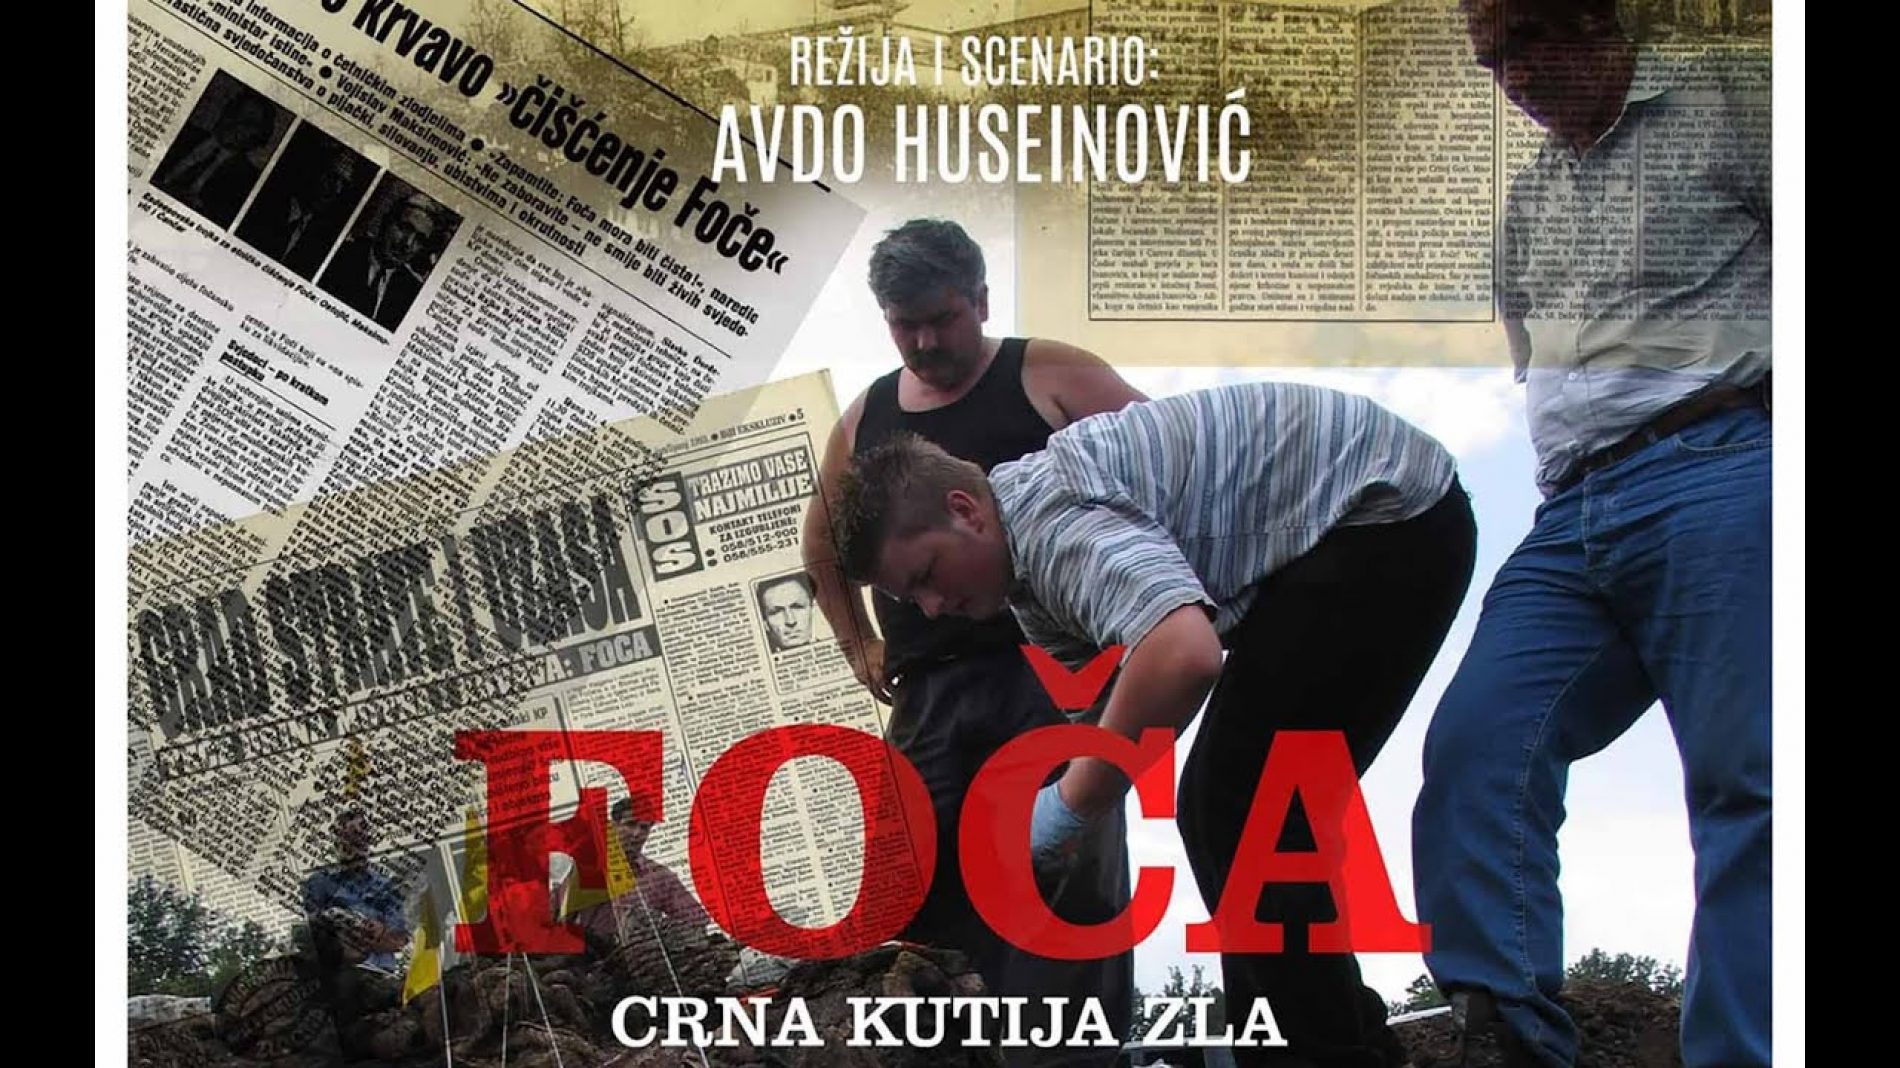 Foča crna kutija zla – Dokumentarni film Avde Huseinovića